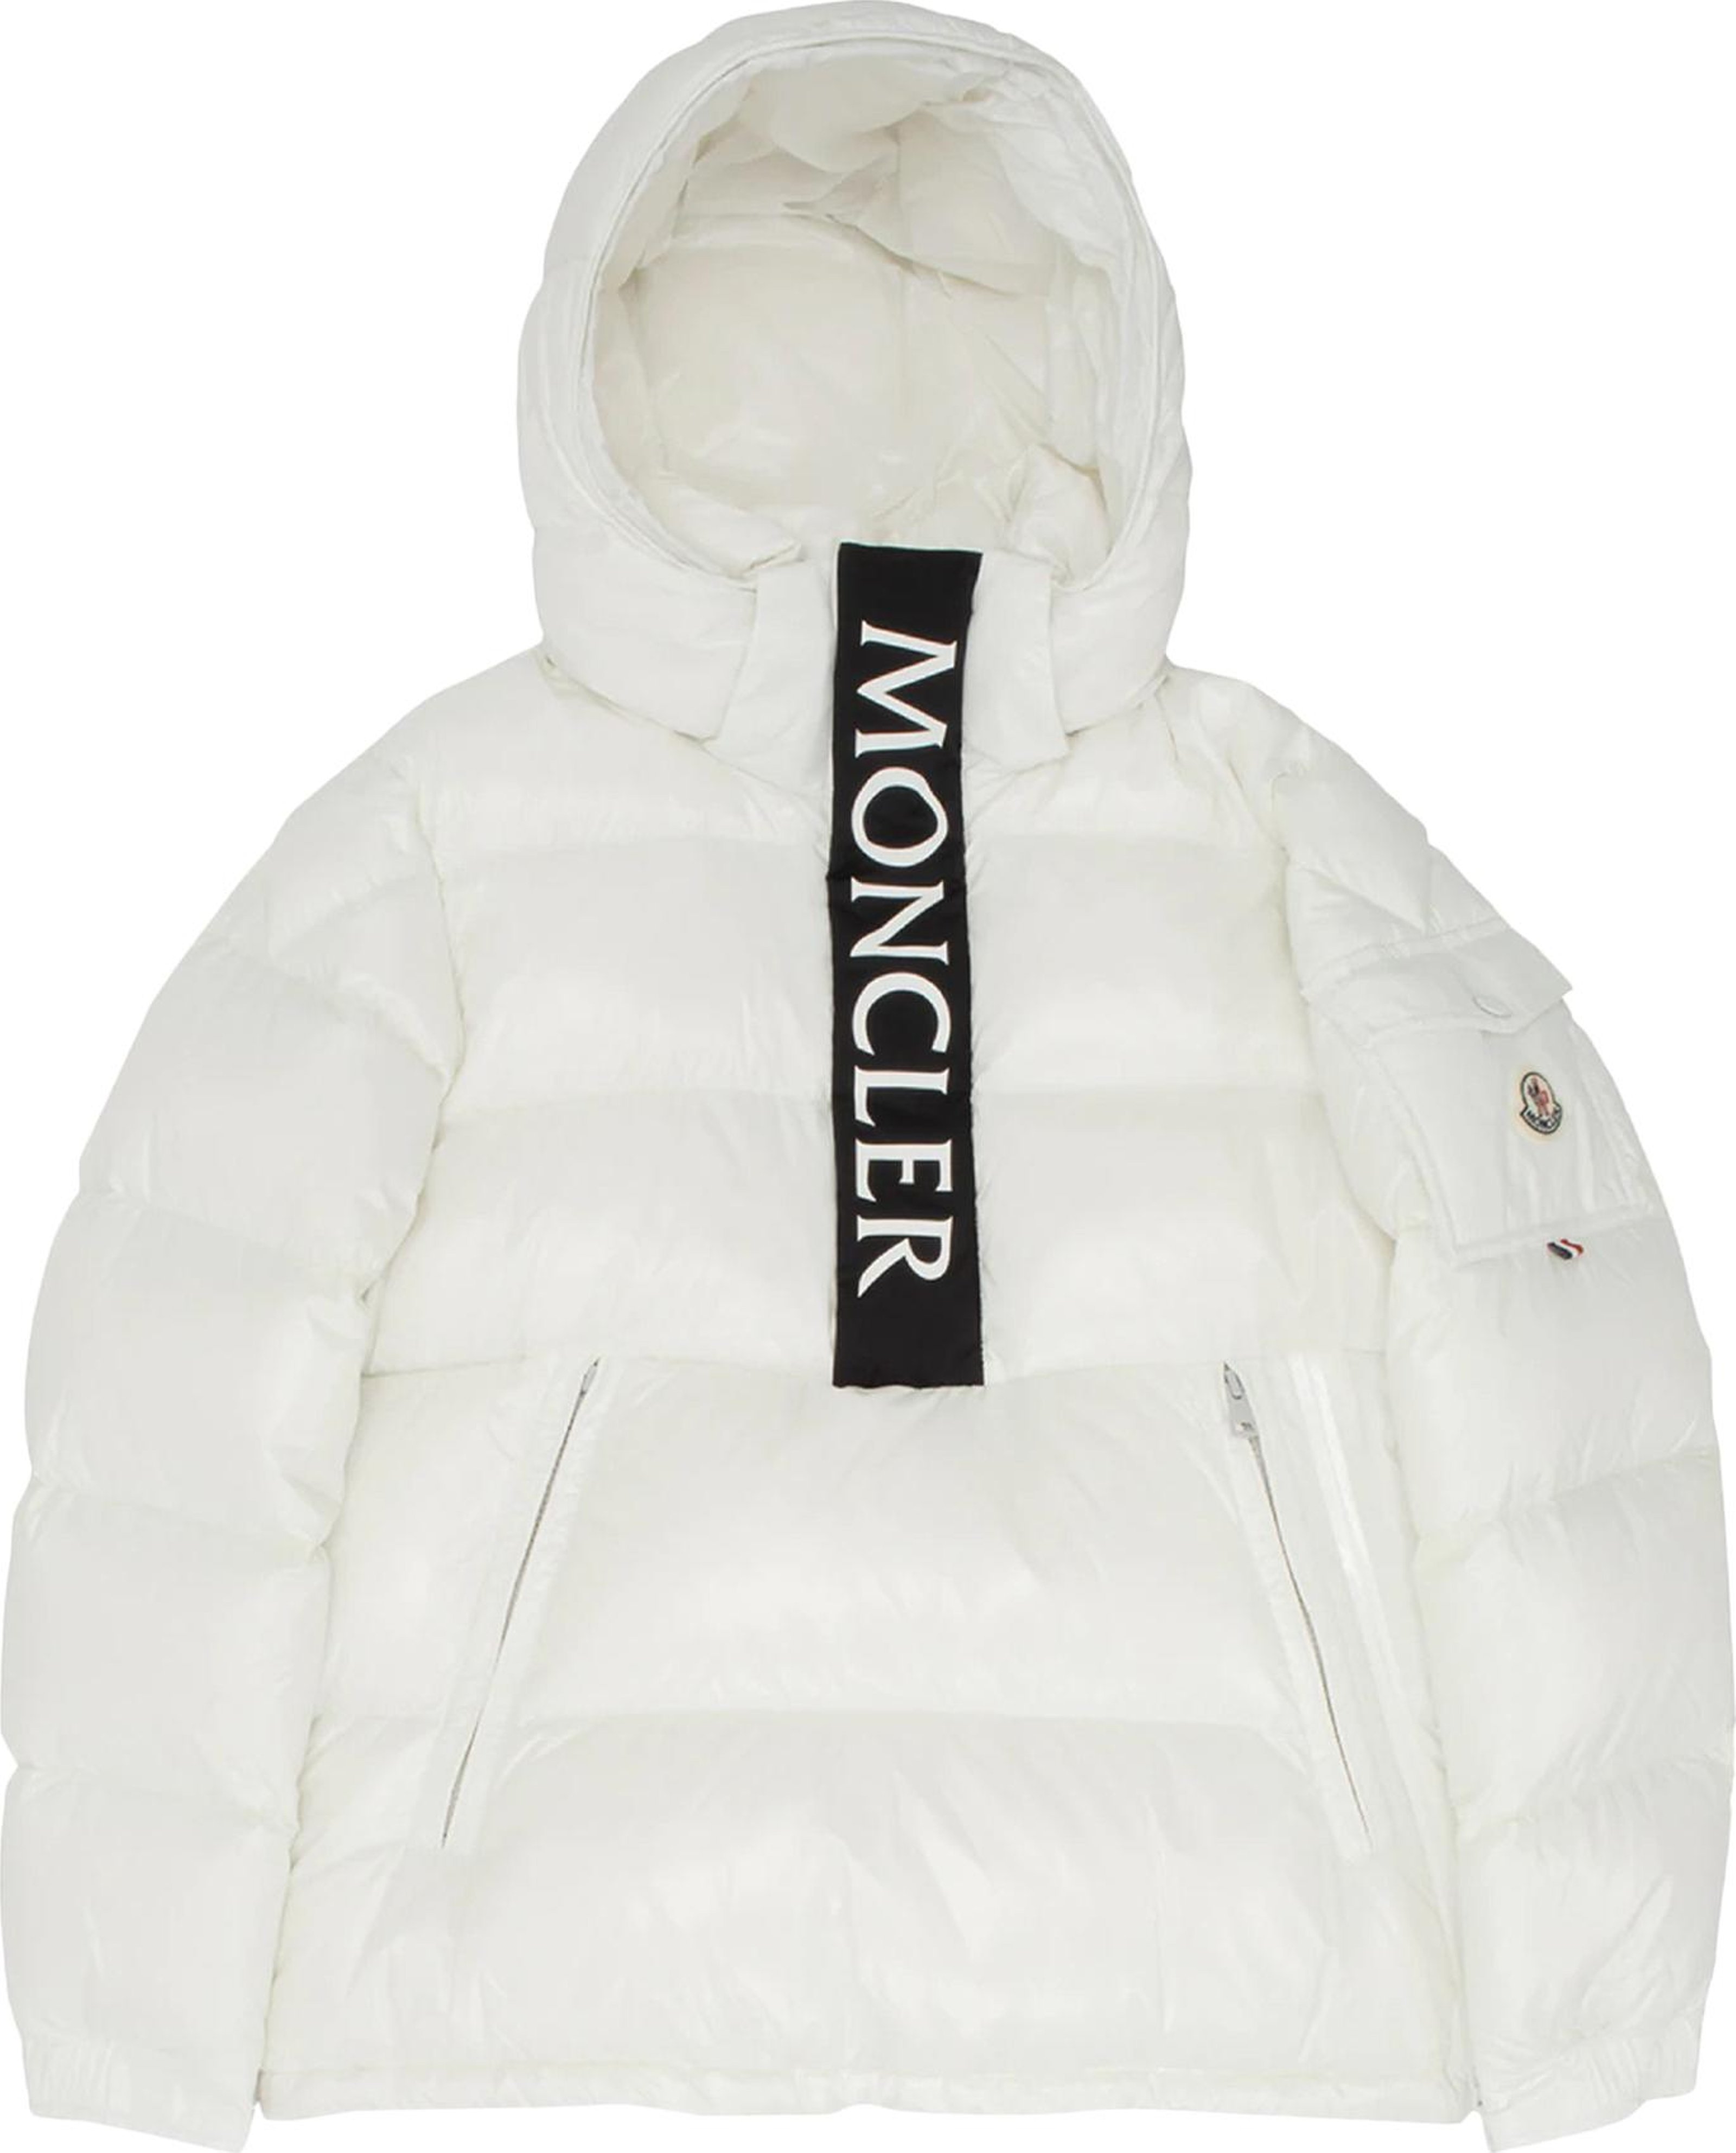 Buy Moncler Maury Shiny Puffer Jacket 'White' - 1A000 40 68950 085 | GOAT